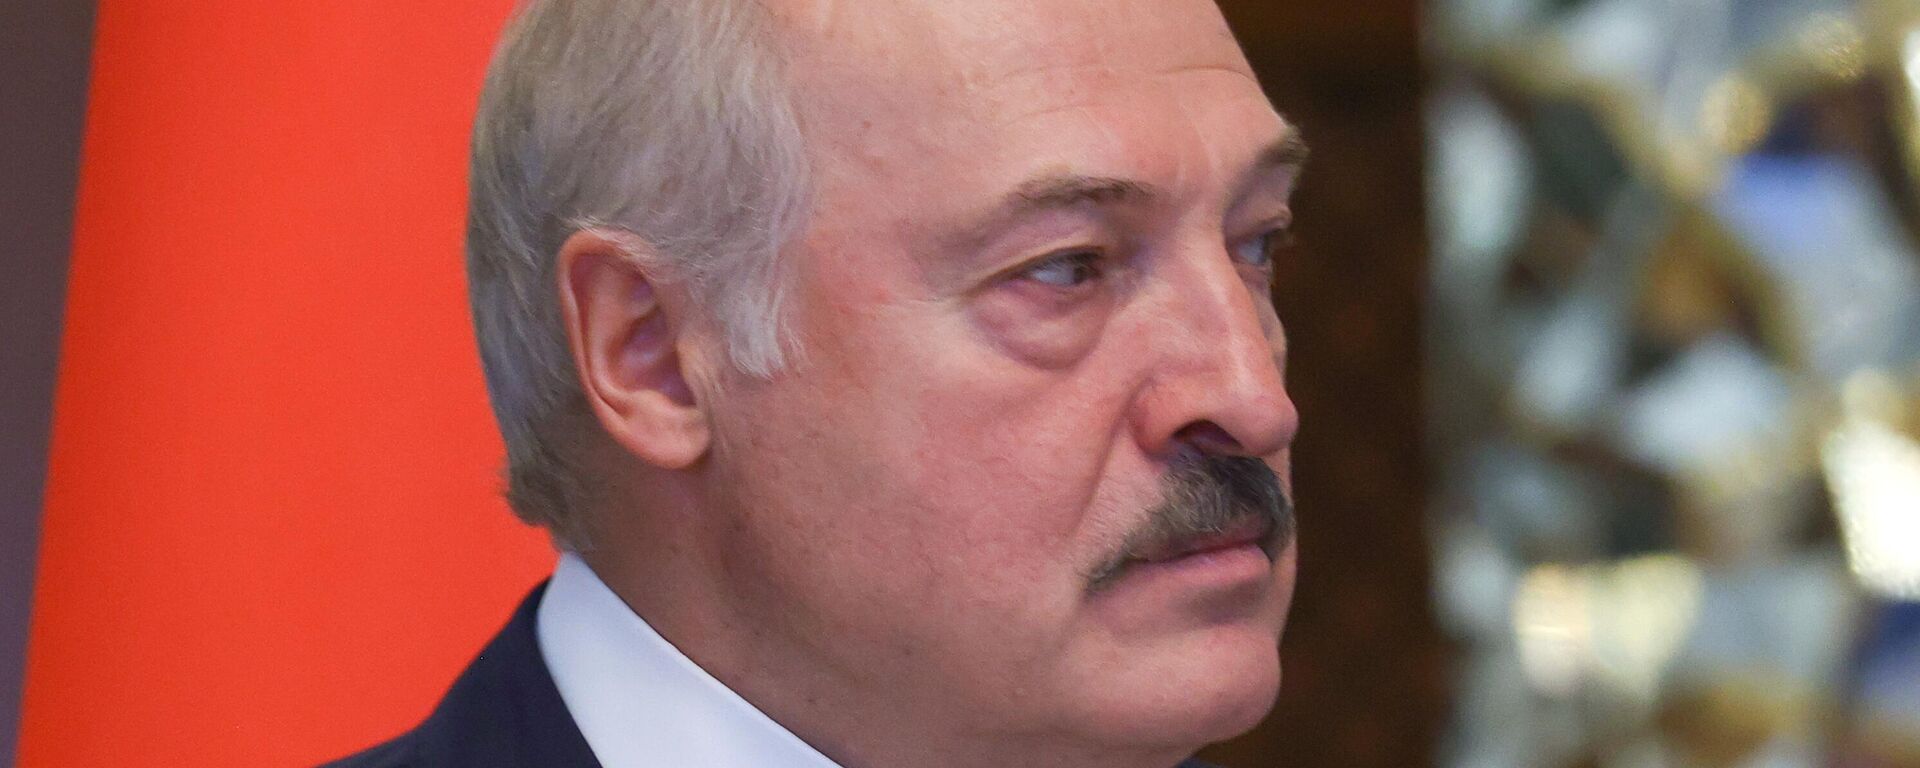 Alexandr Lukashenko, presidente de Bielorrusia - Sputnik Mundo, 1920, 16.11.2021